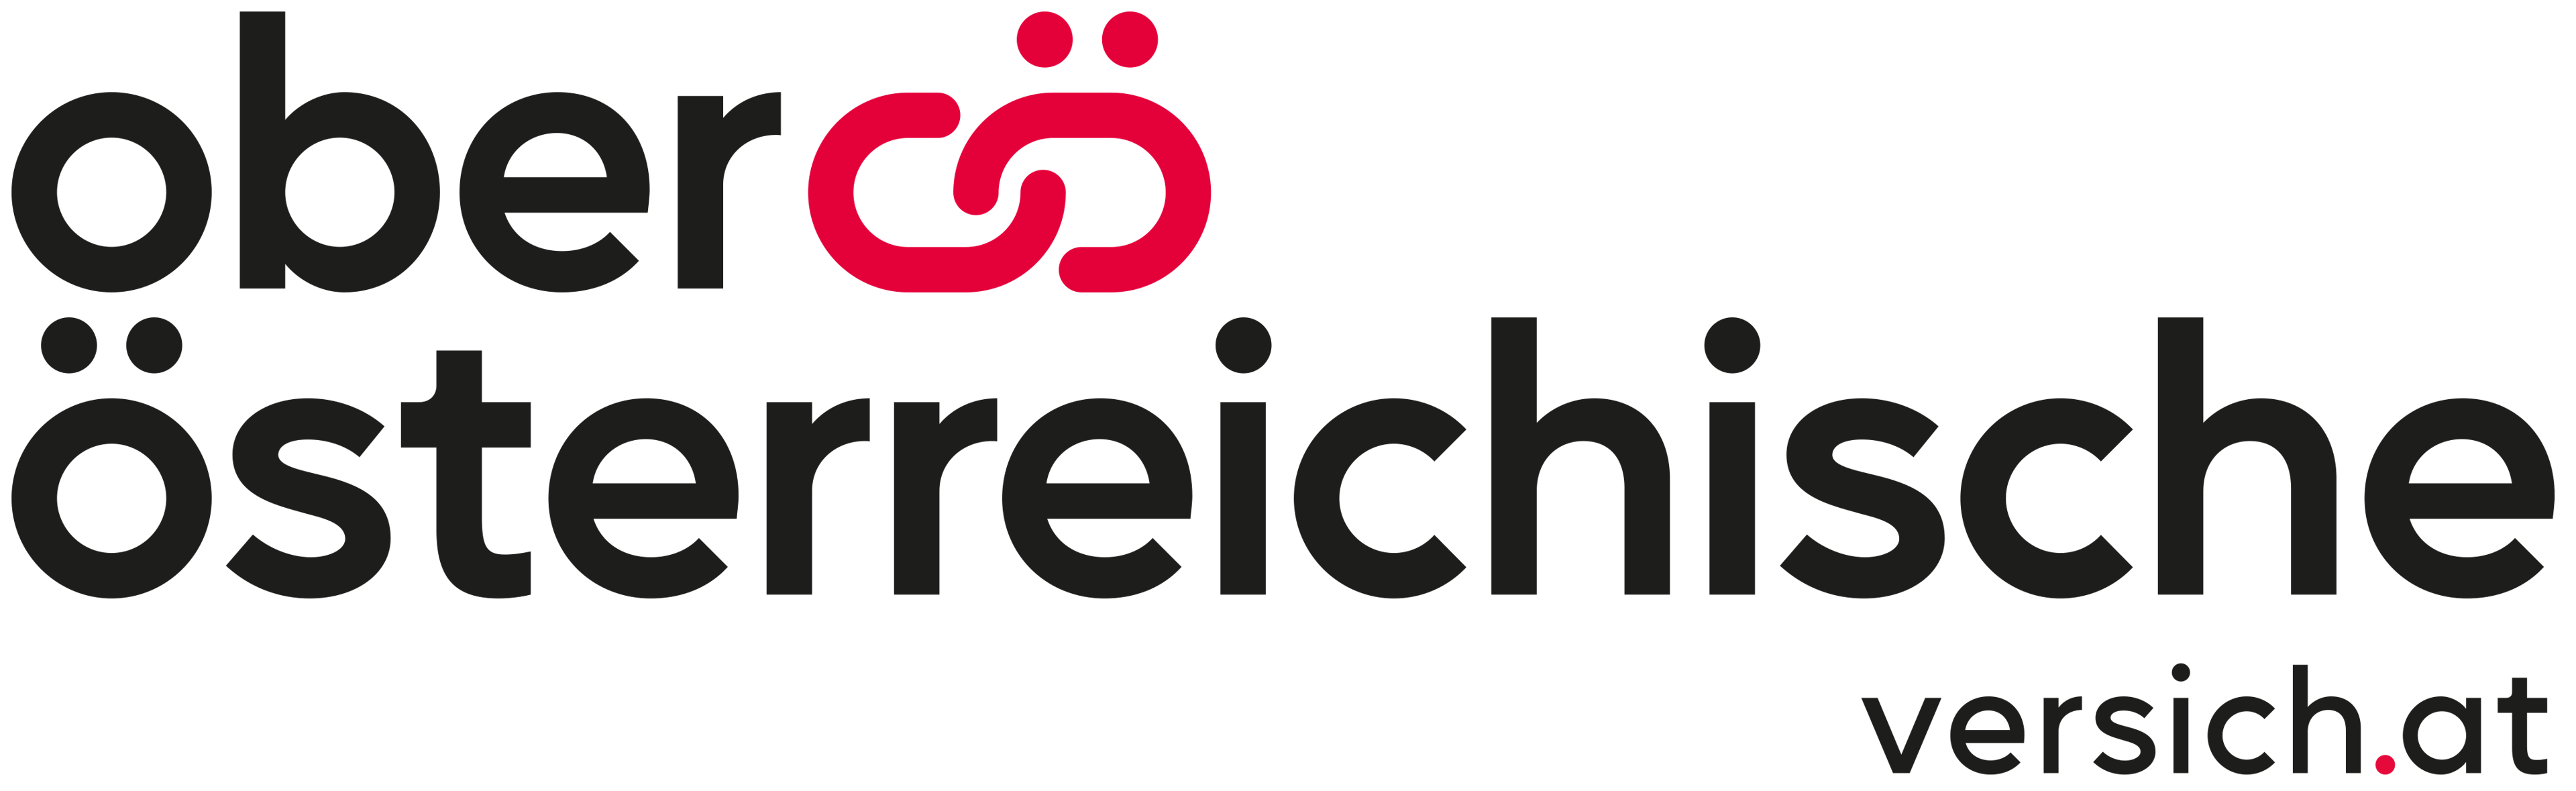 Oberösterreichische Versicherung AG Teaser Logo